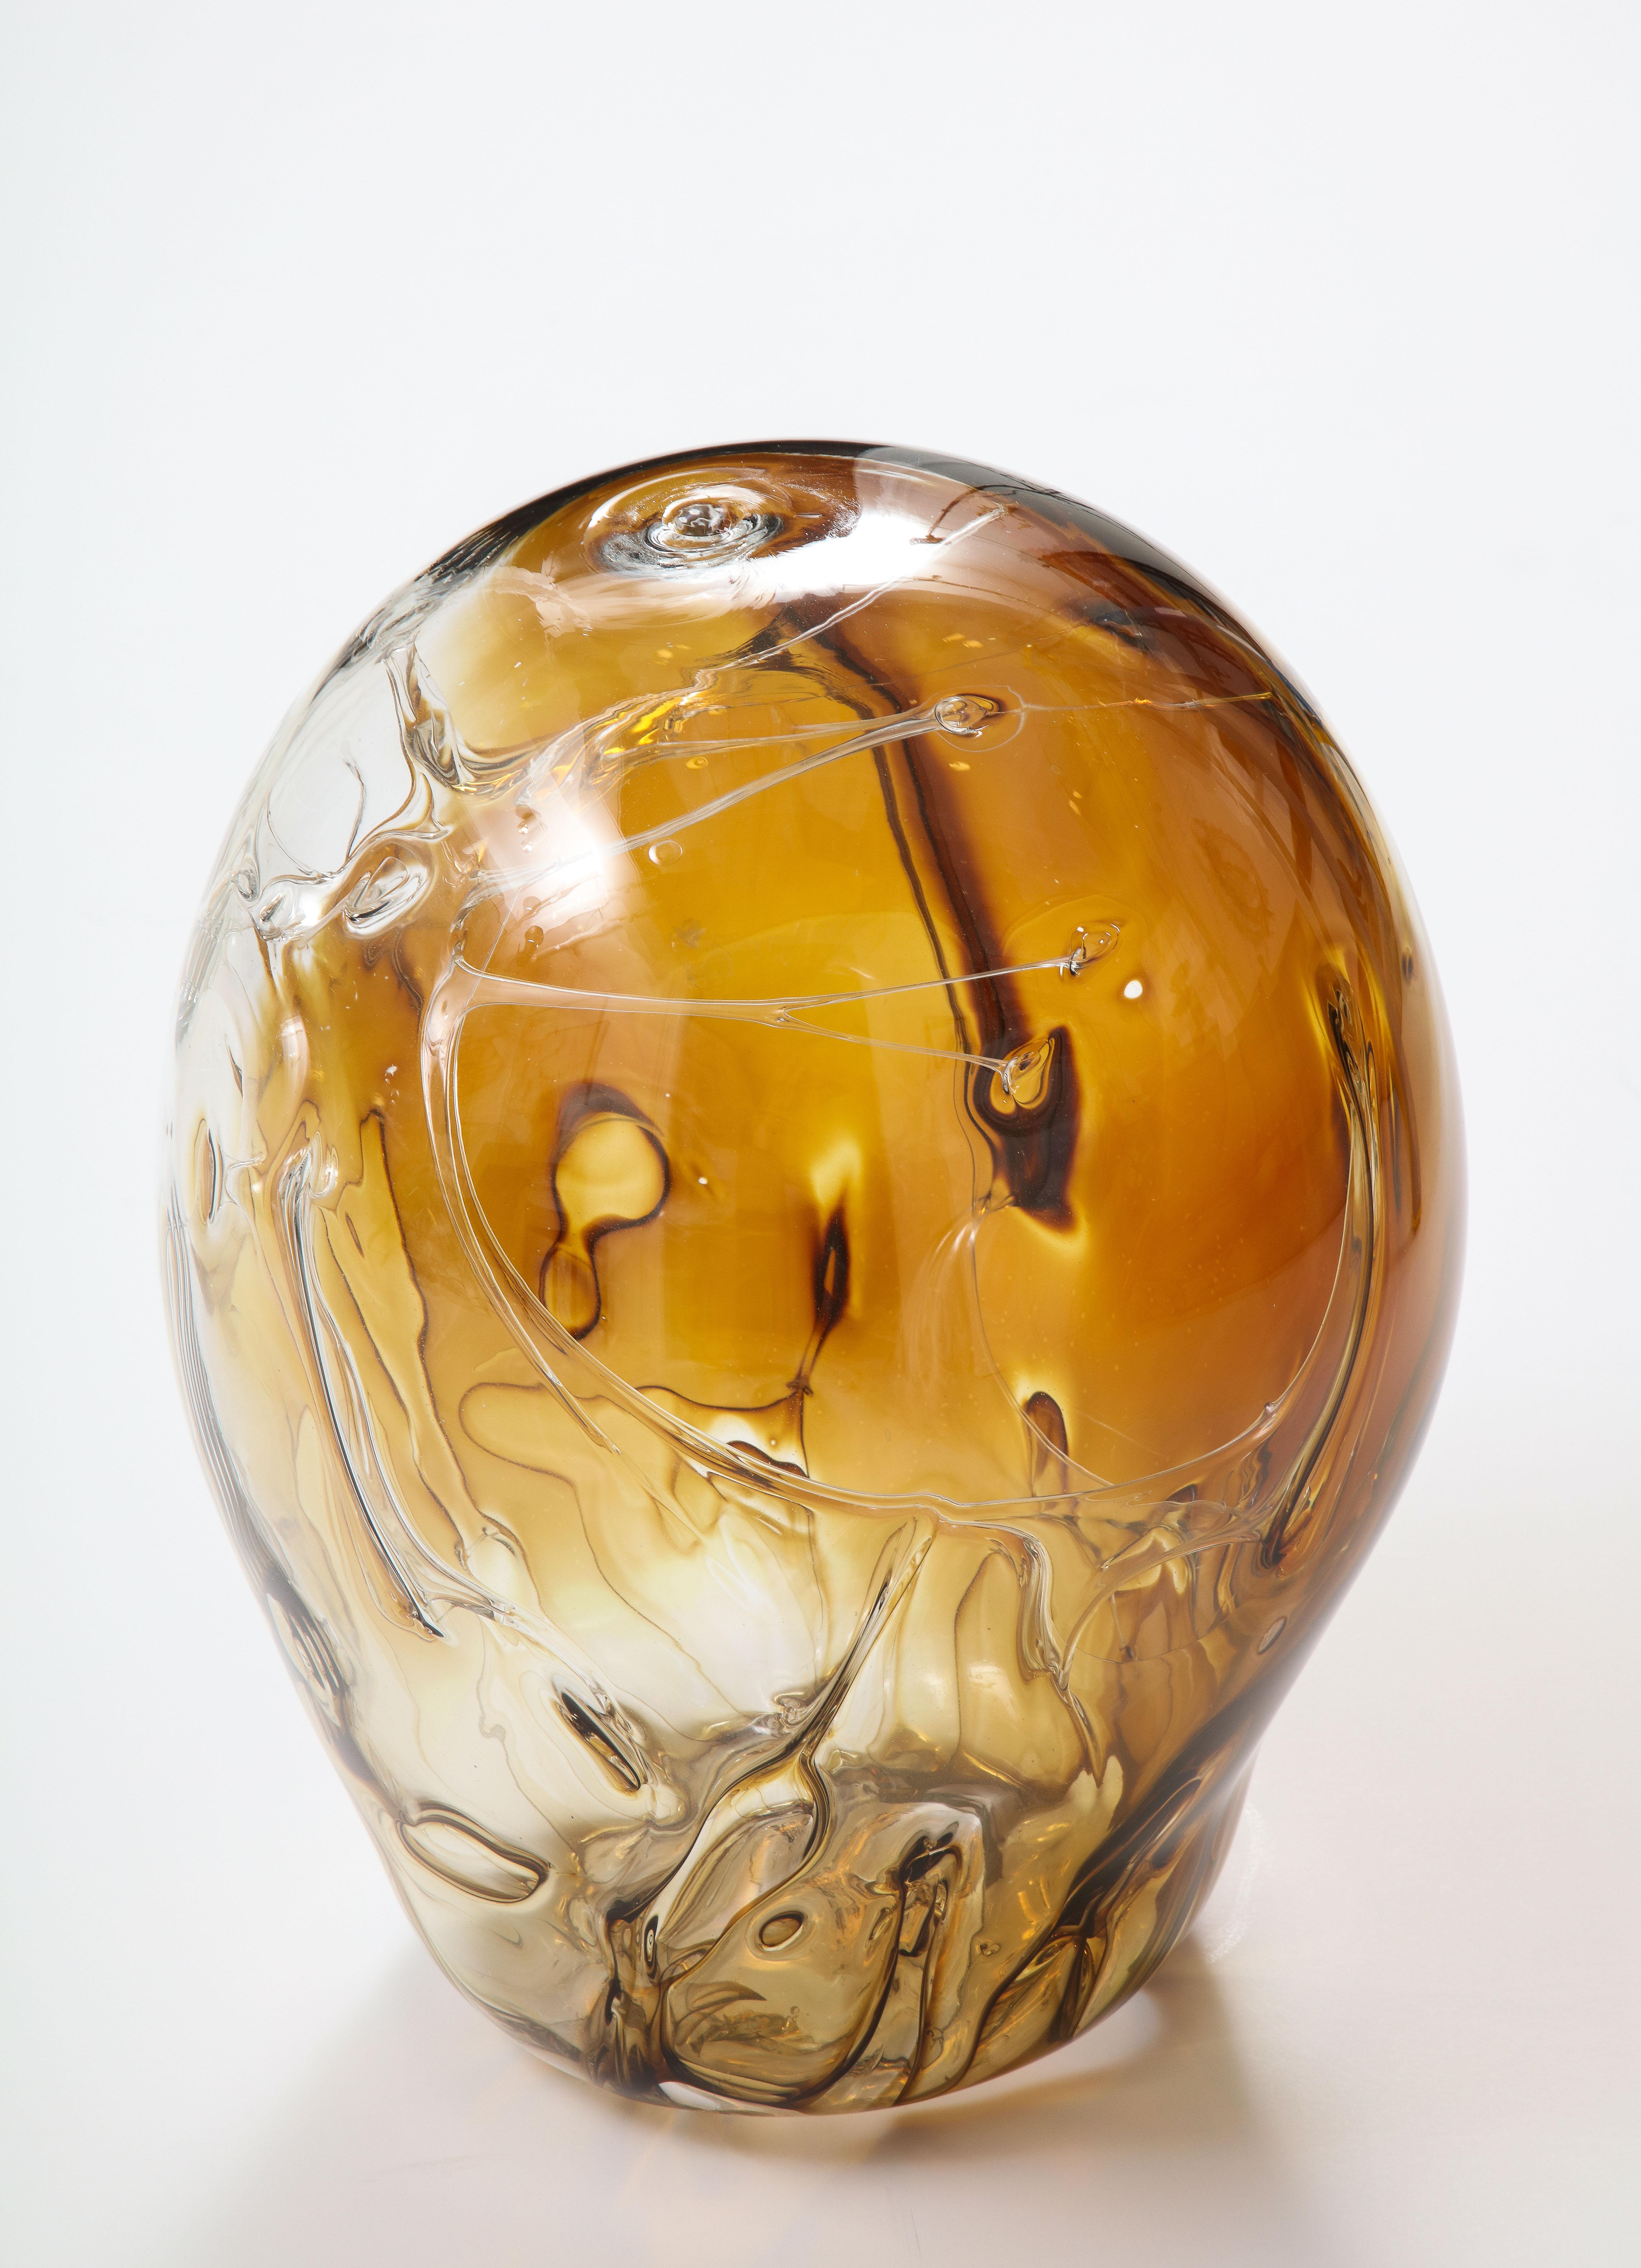 Extra große mundgeblasene Glasskulptur von Peter Bramhall.
Seltene Farbkombination in Bernstein- und Brauntönen mit innenliegenden Glasfäden,
Signiert und datiert auf der Unterseite.